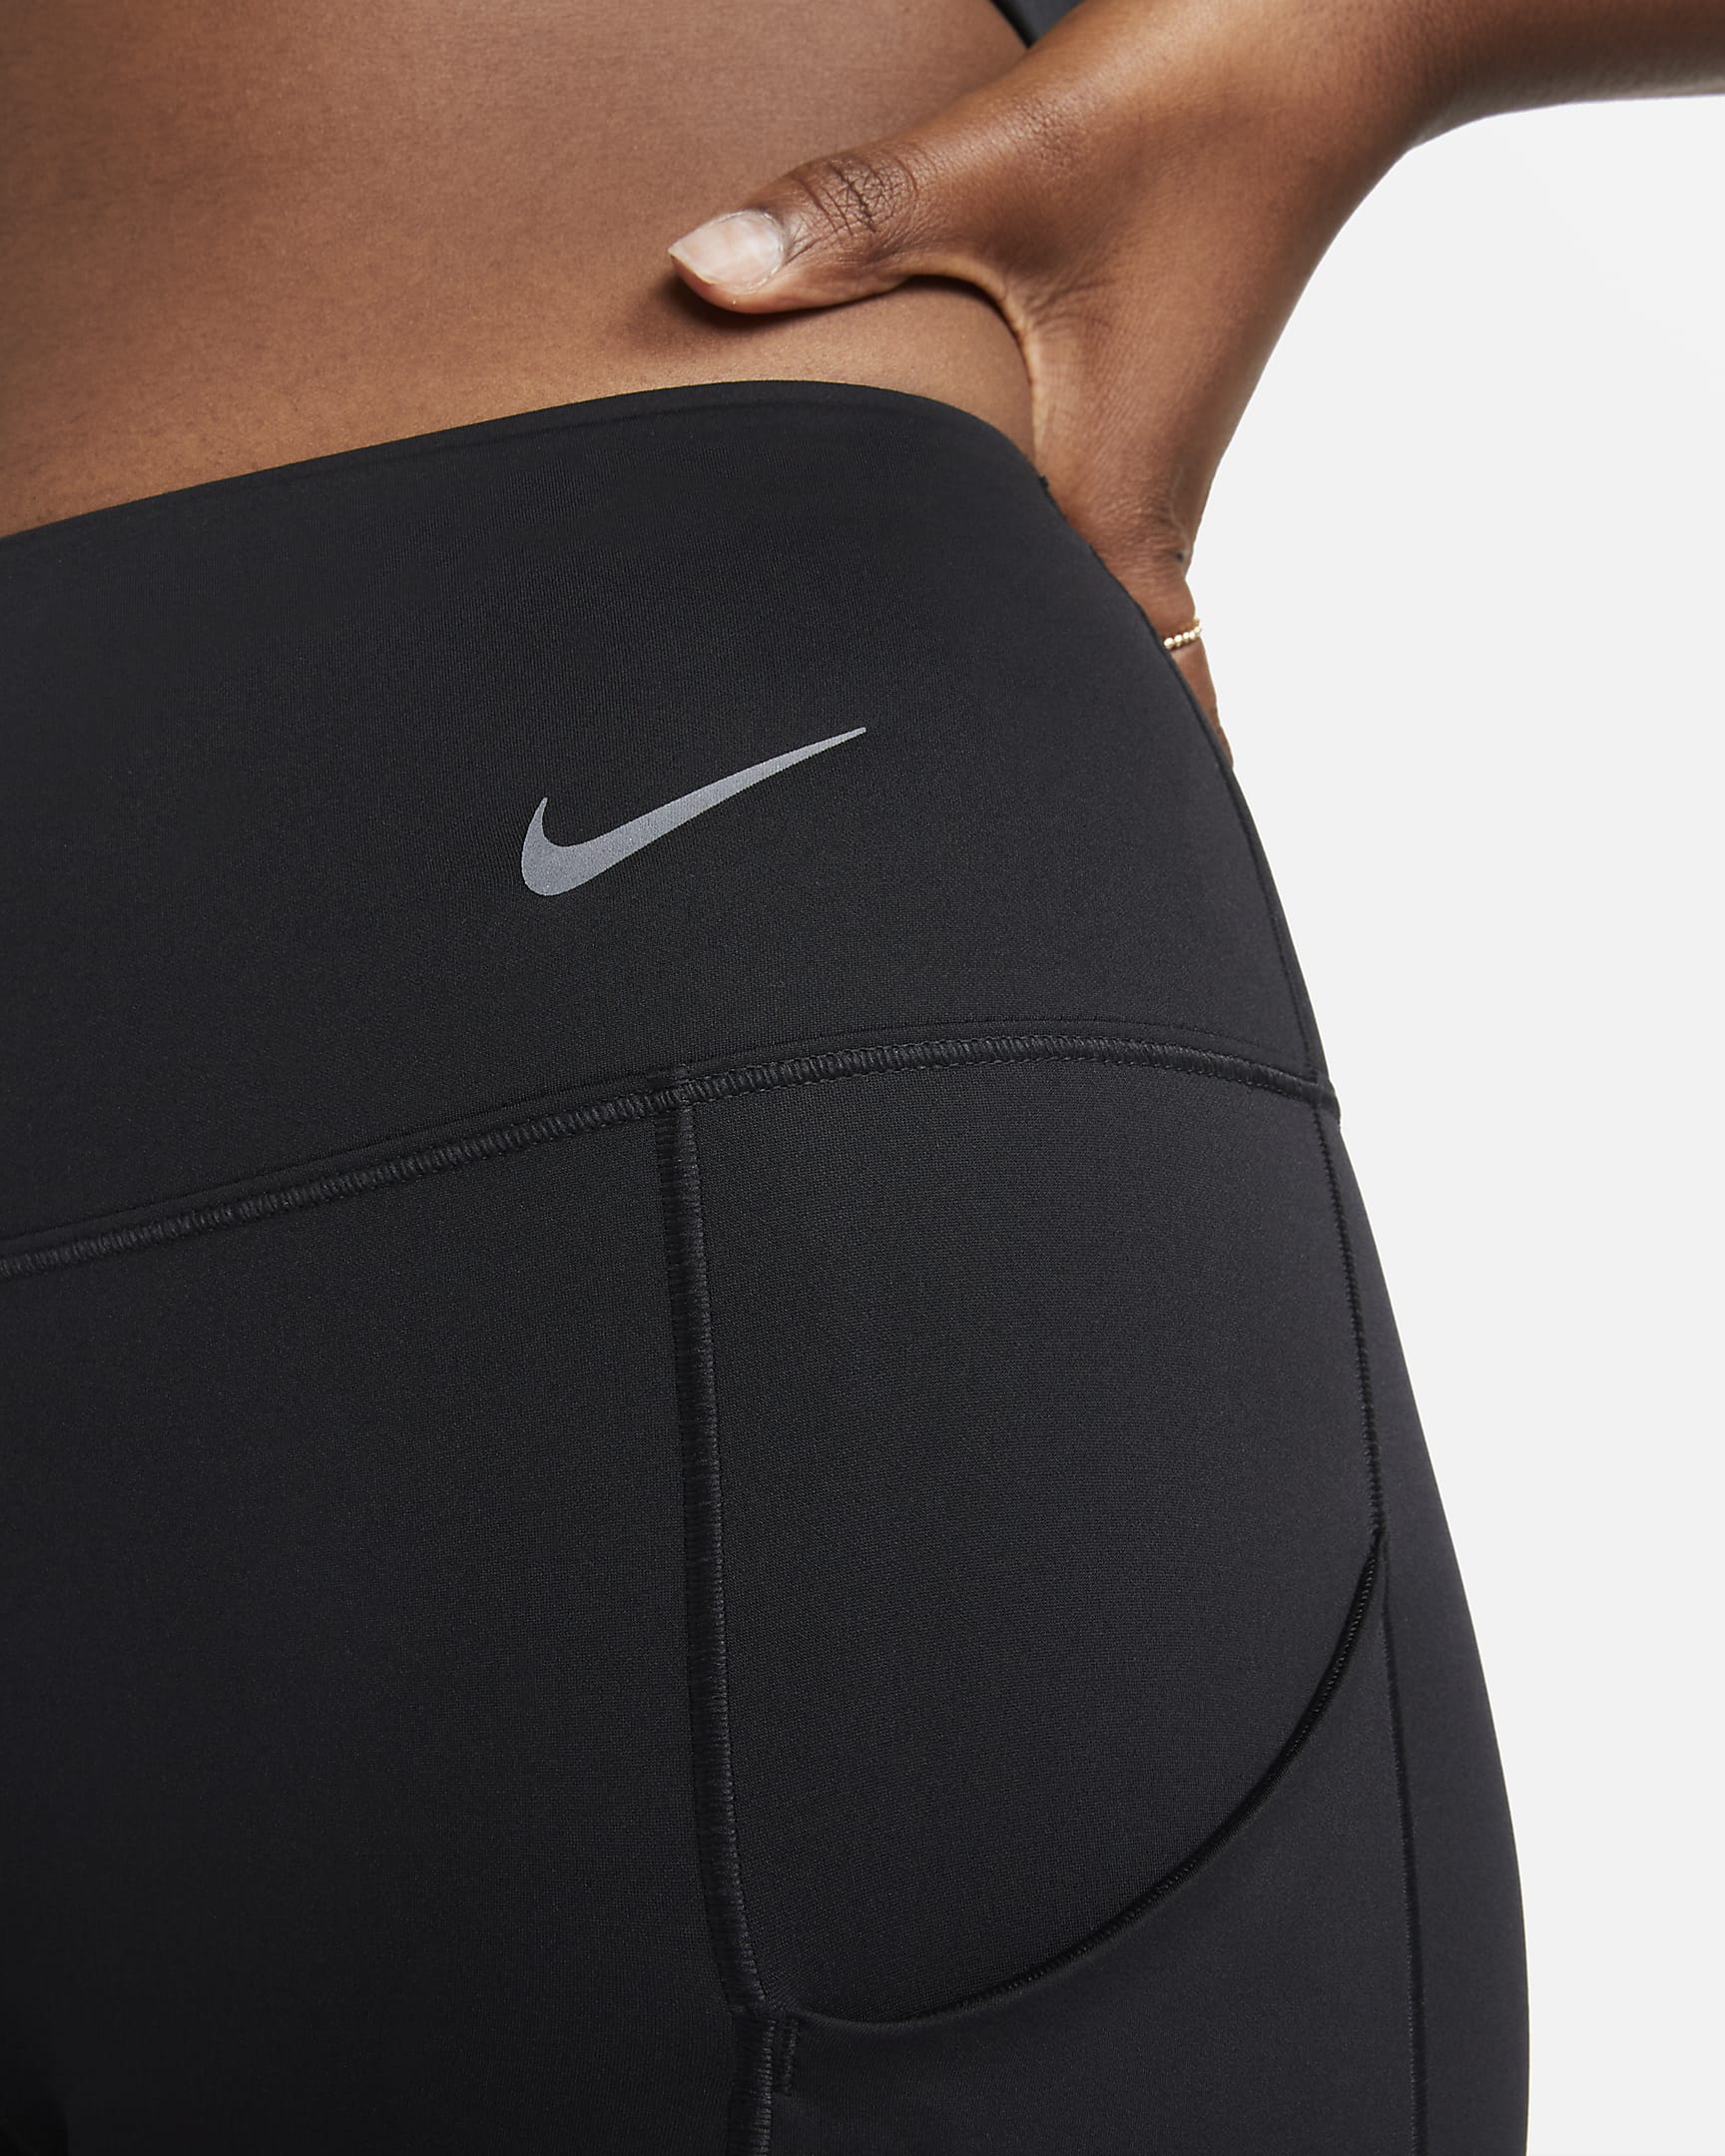 Leggings a tutta lunghezza a vita media con tasche e sostegno elevato Nike Go – Donna - Nero/Nero